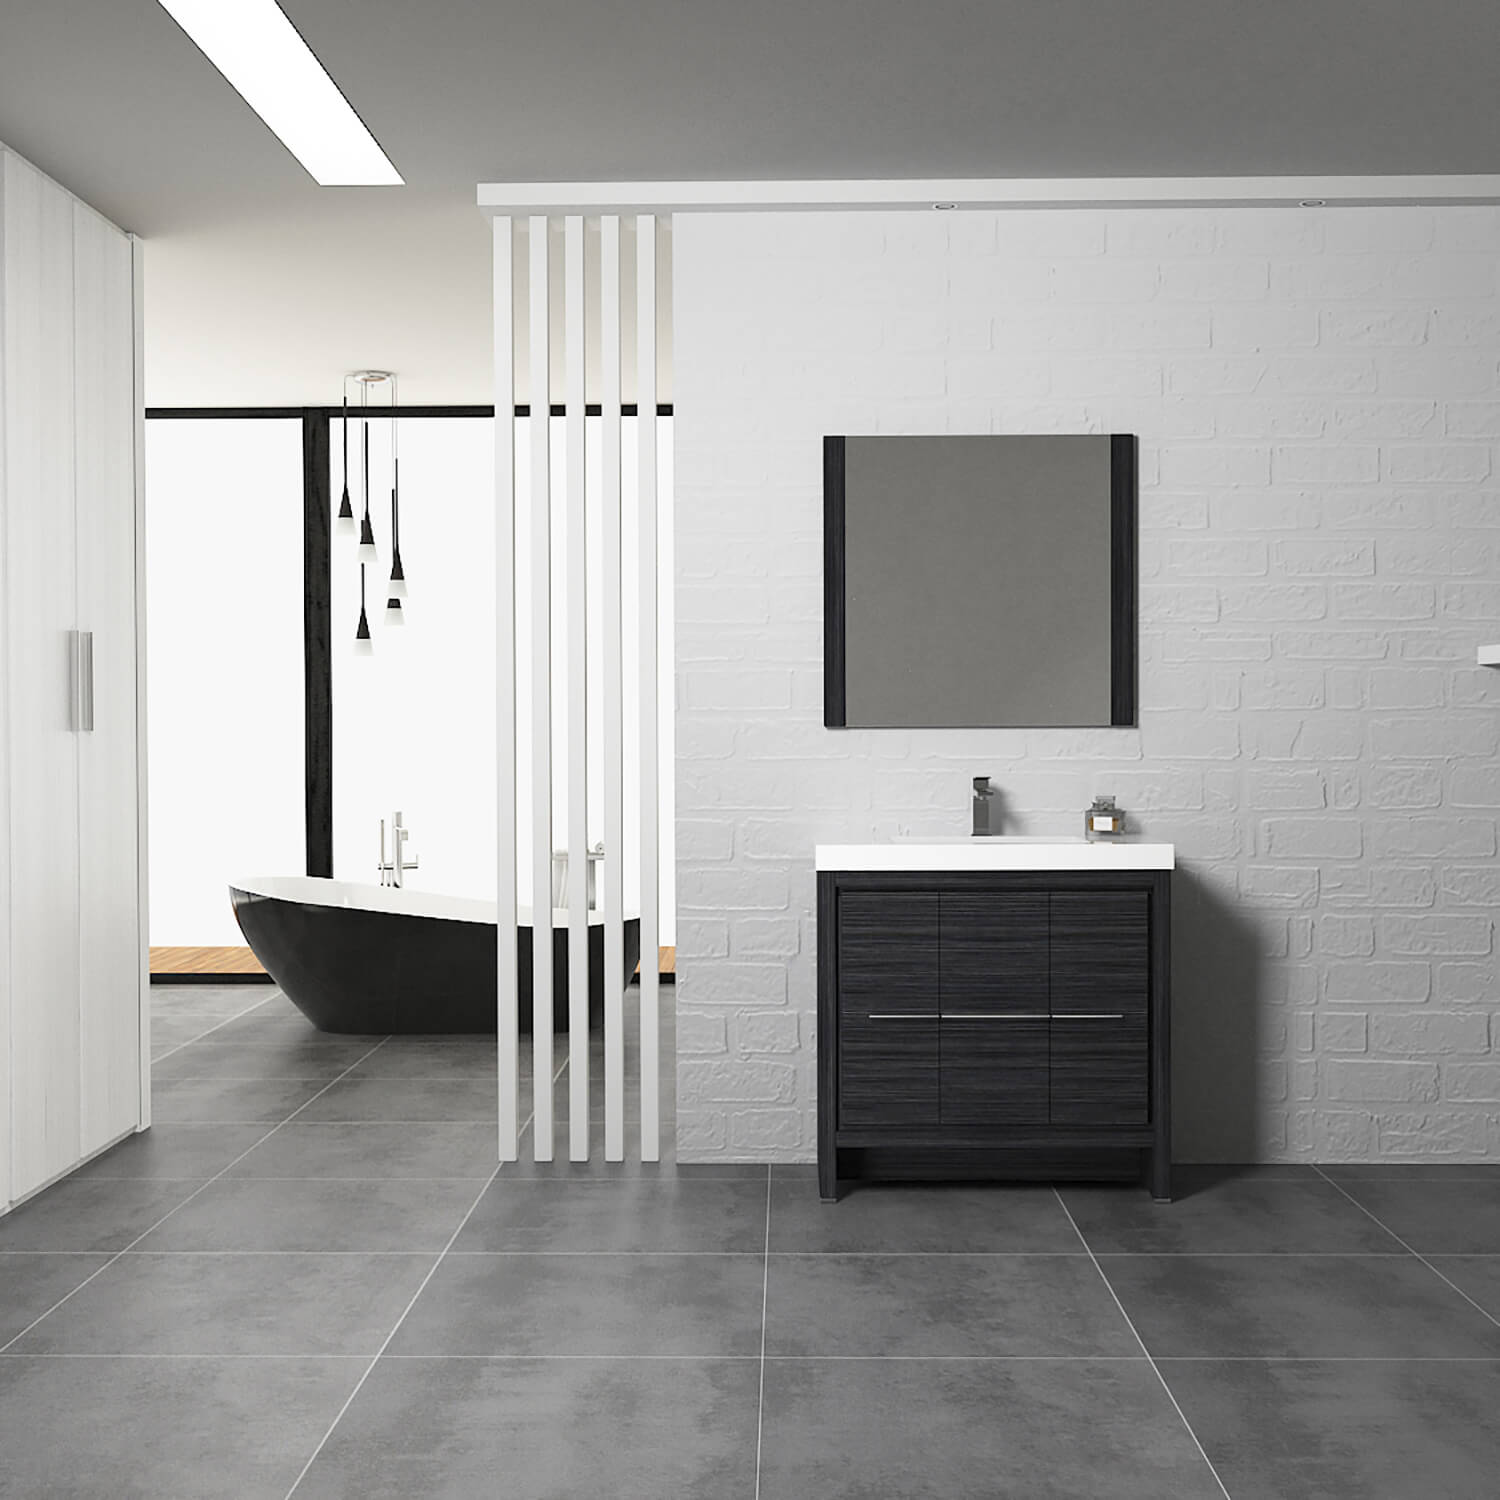 Milan 36 Inch Vanity with Ceramic Top - Modern Bathroom Vanity